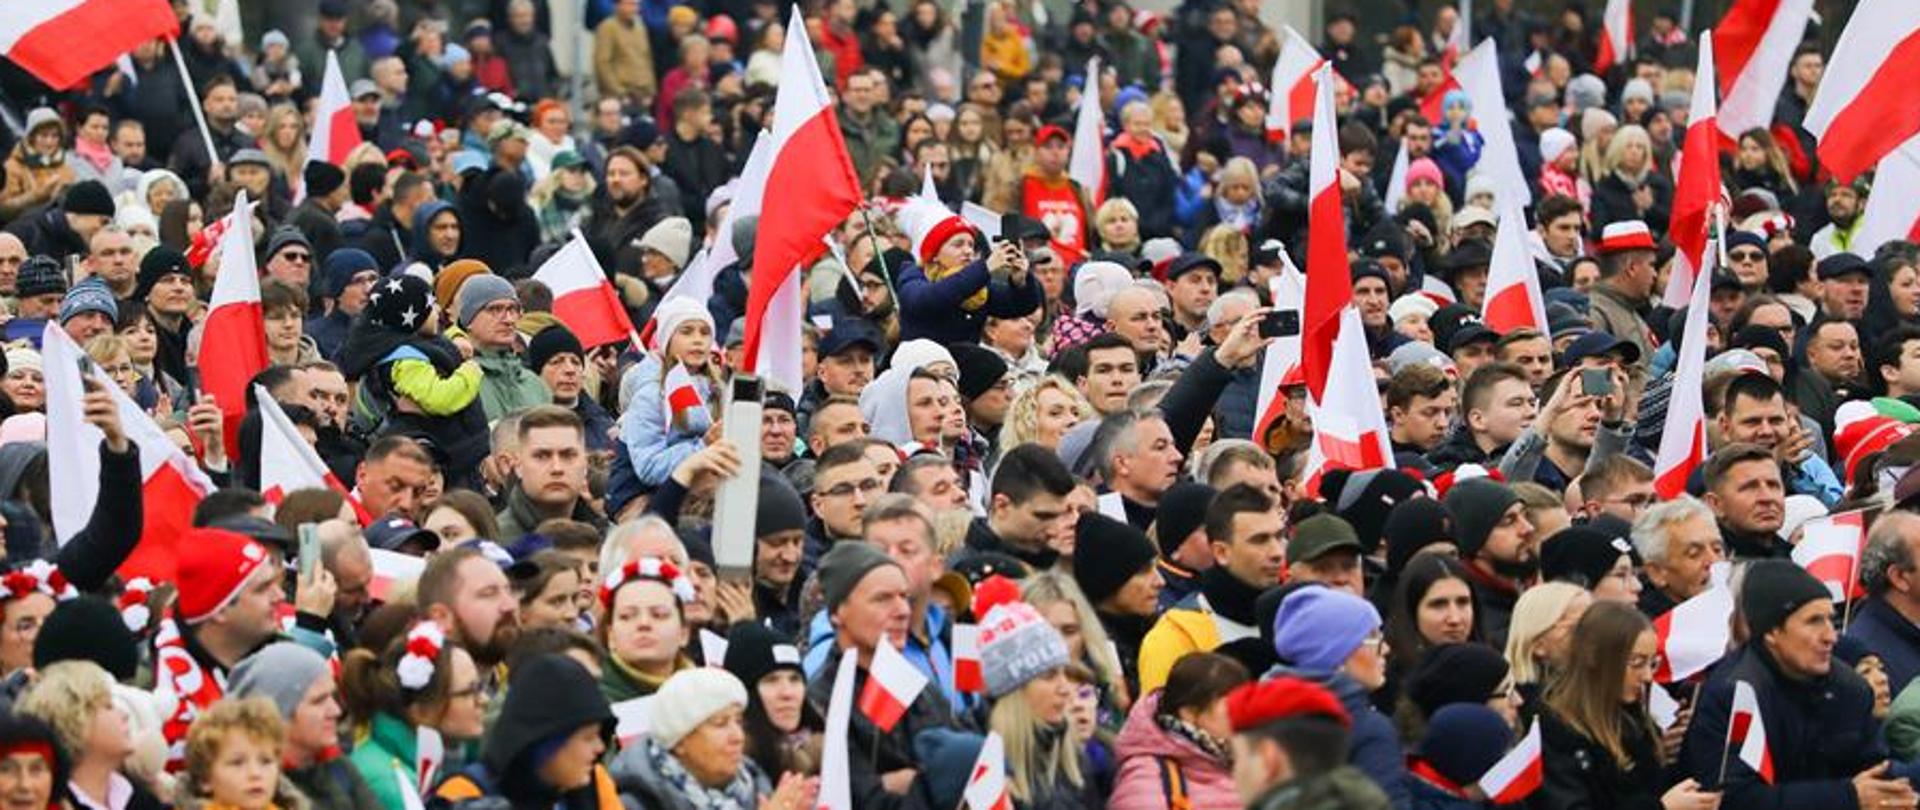 Oficjalne uroczystości, hołd dla Ojców Niepodległości oraz Festiwal Niepodległa na Krakowskim Przedmieściu – tak obchodziliśmy 105. rocznicę odzyskania niepodległości, fot. Danuta Matloch